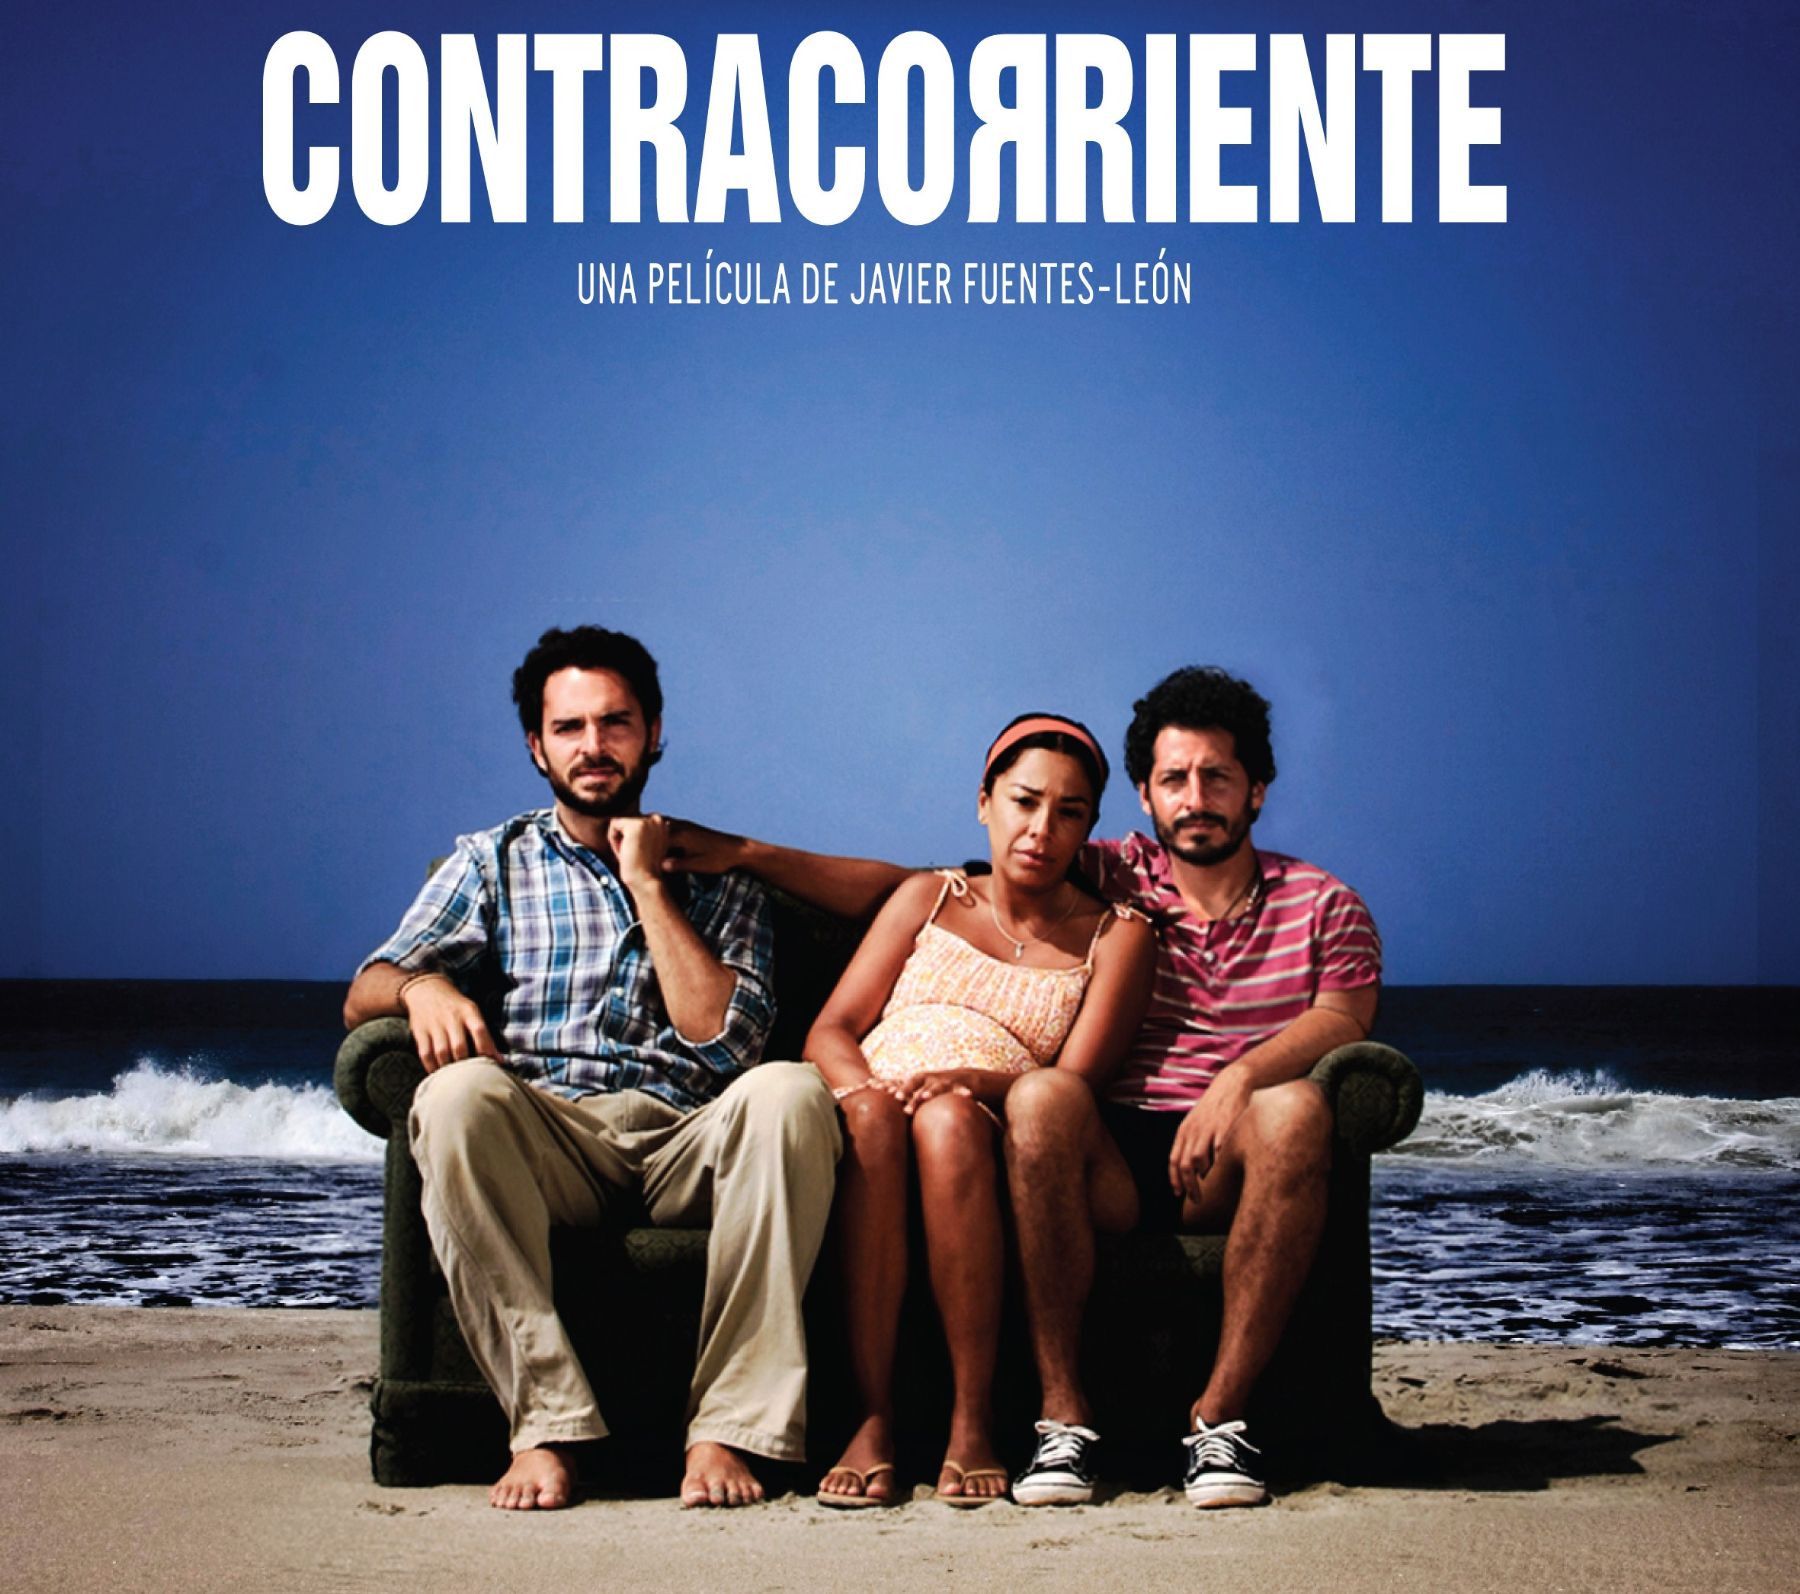 Película peruana Contracorriente, de Javier Fuentes-León, compite con otros 10 filmes para ser nominados al Oscar.